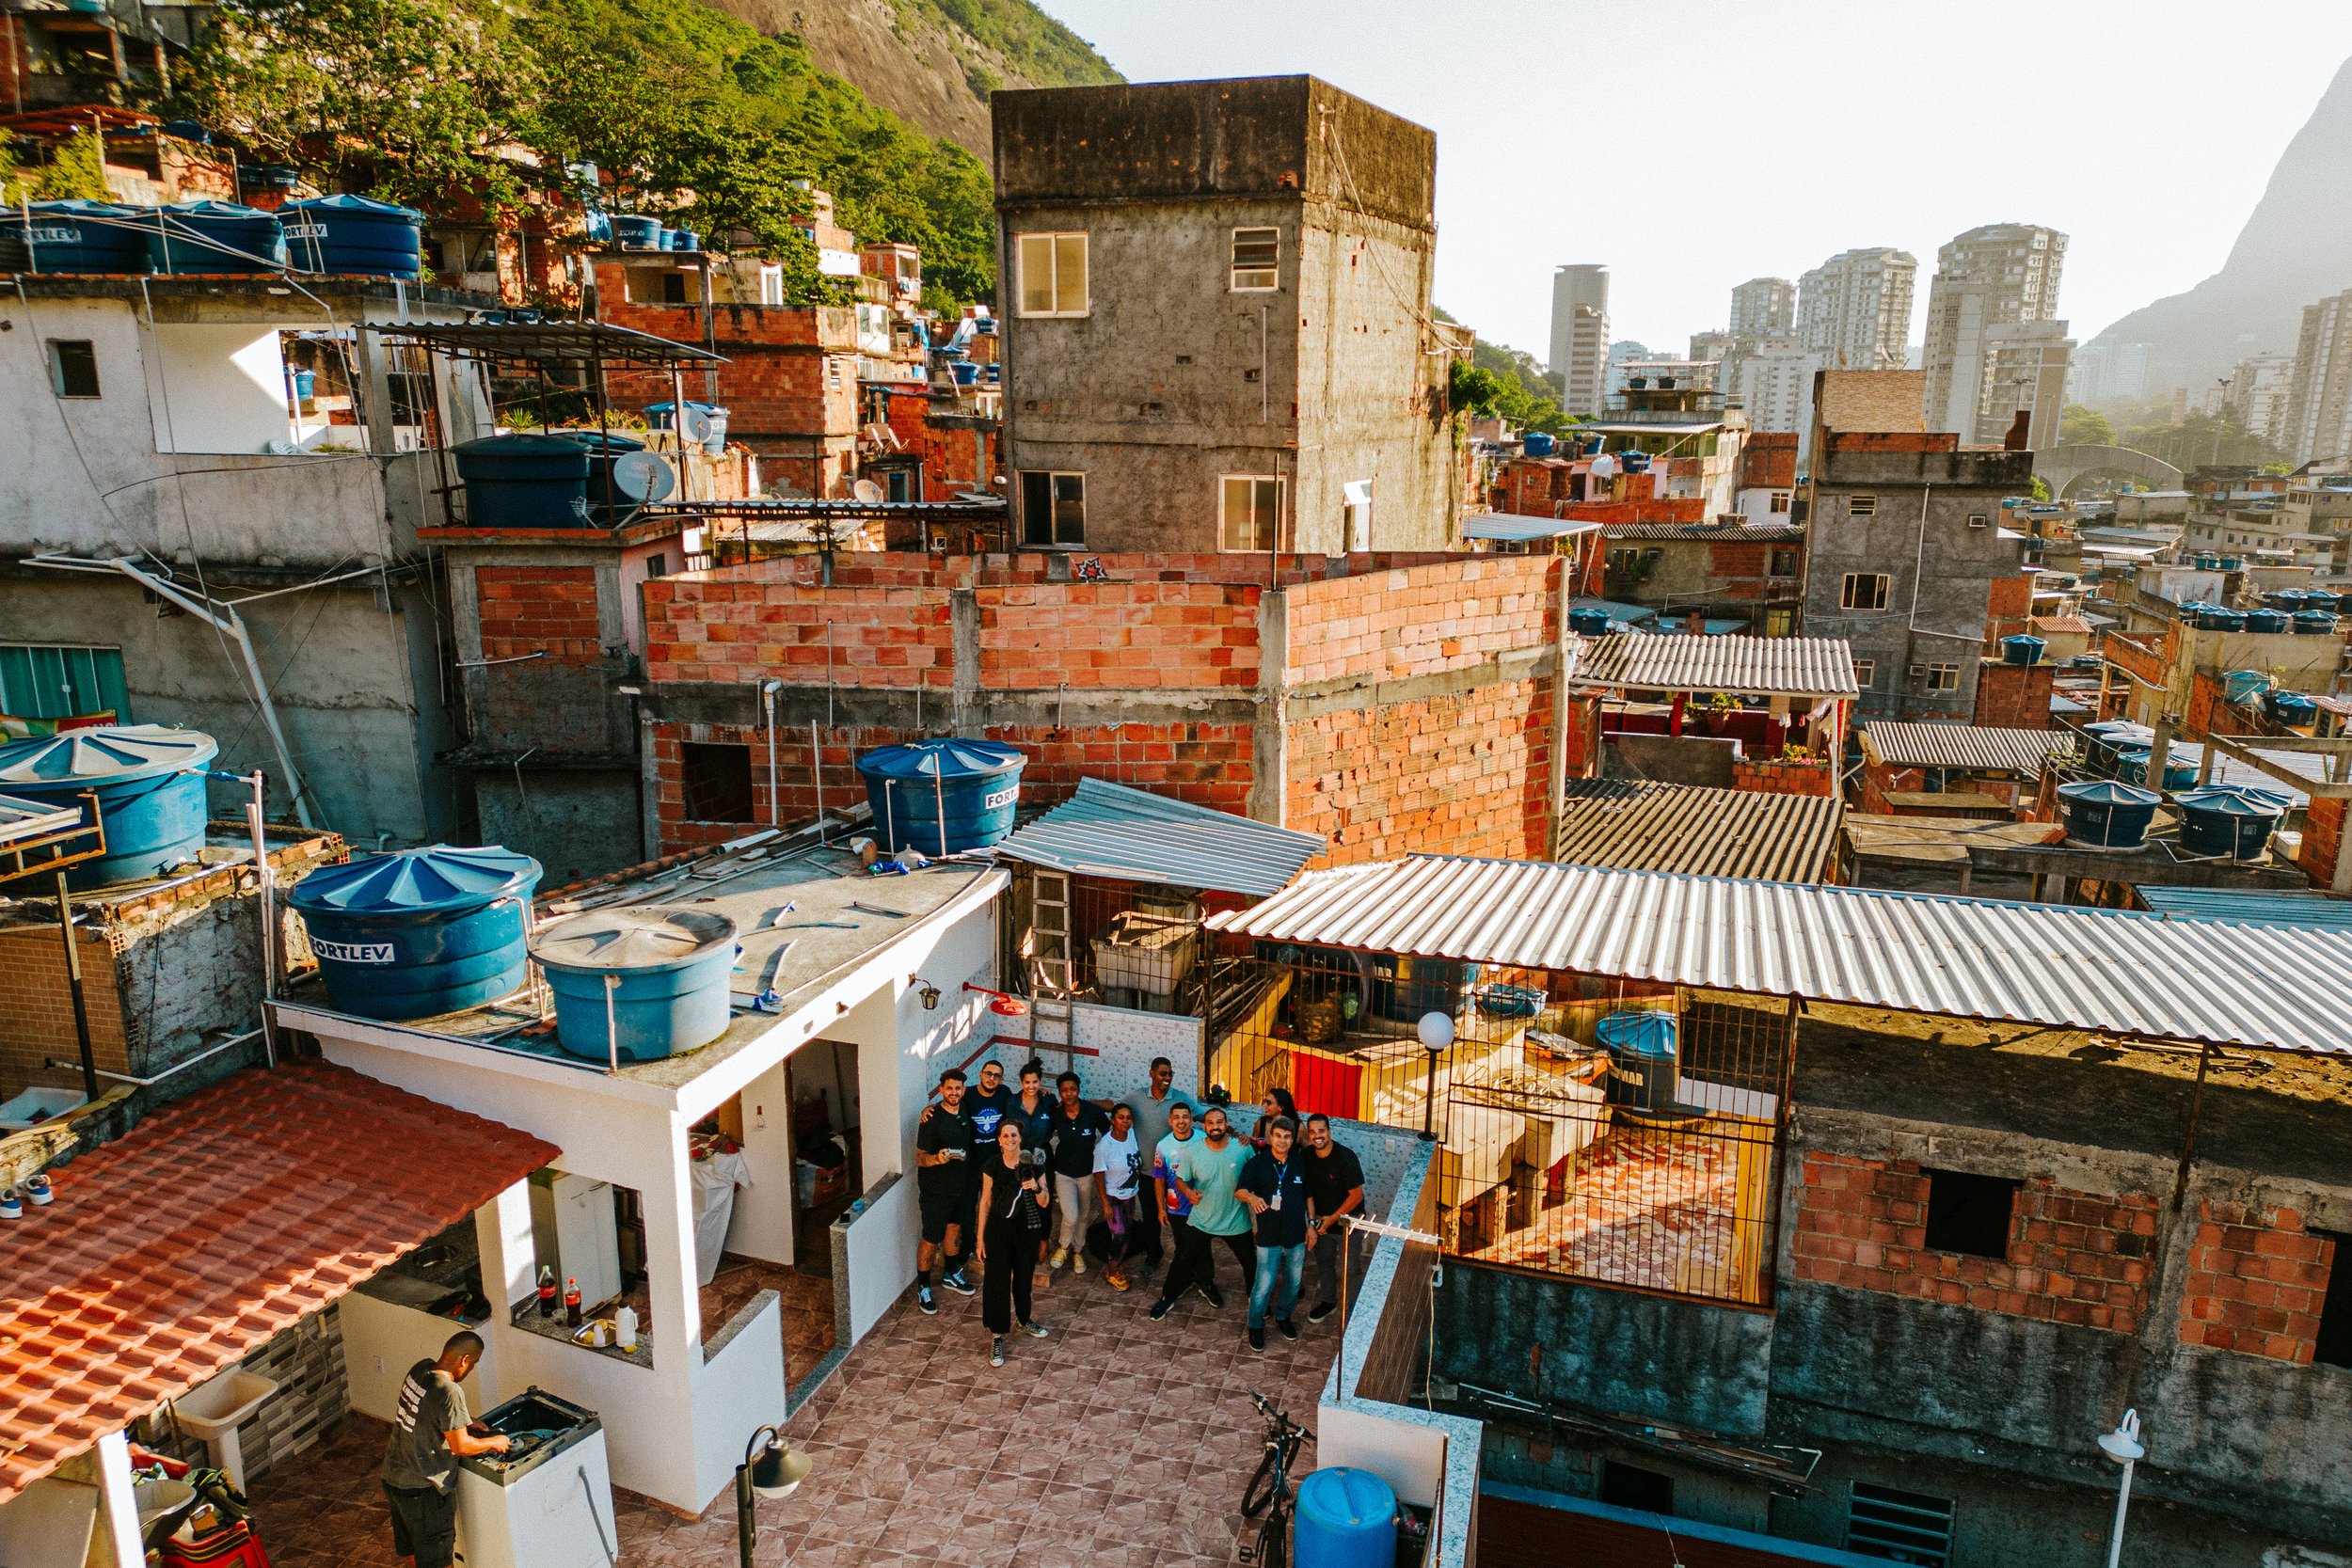 favela-da-rocinha-rio-de-janeiro-guia-turistico-para-favela-ricardo-franzen-producao-de-filme-documentario-educacao-na-favela-rio-de-janeiro-rocinha-7.jpg